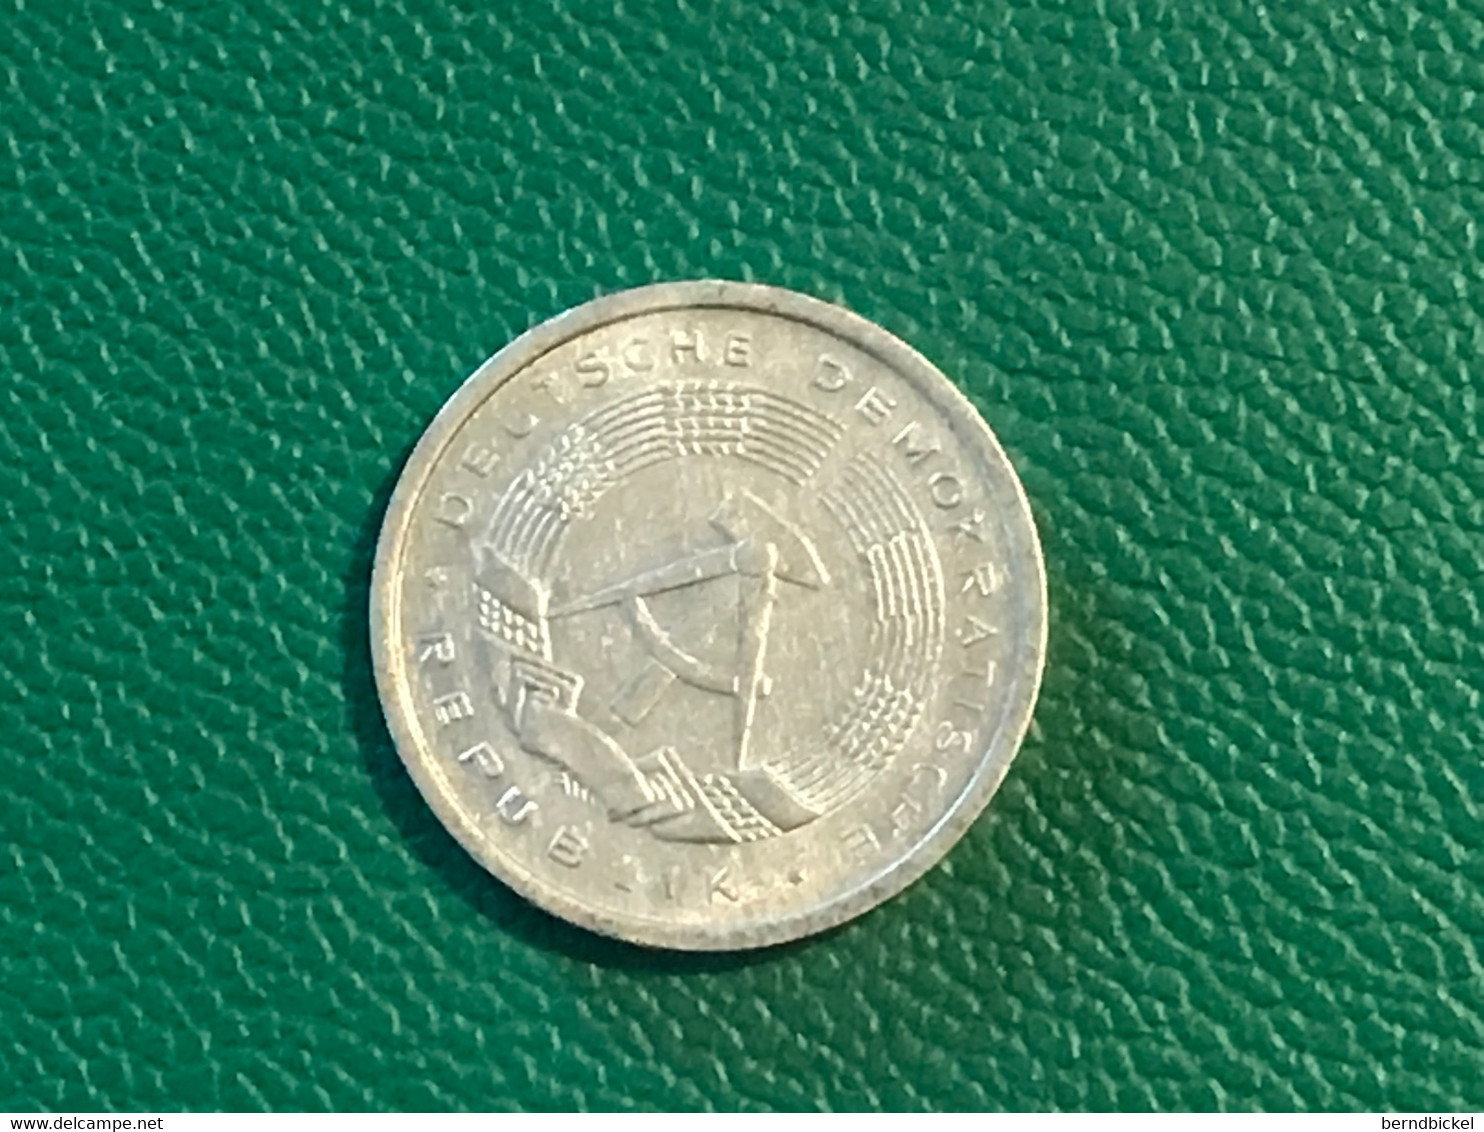 Münze Münzen Umlaufmünze Deutschland DDR 1 Pfennig 1982 - 1 Pfennig